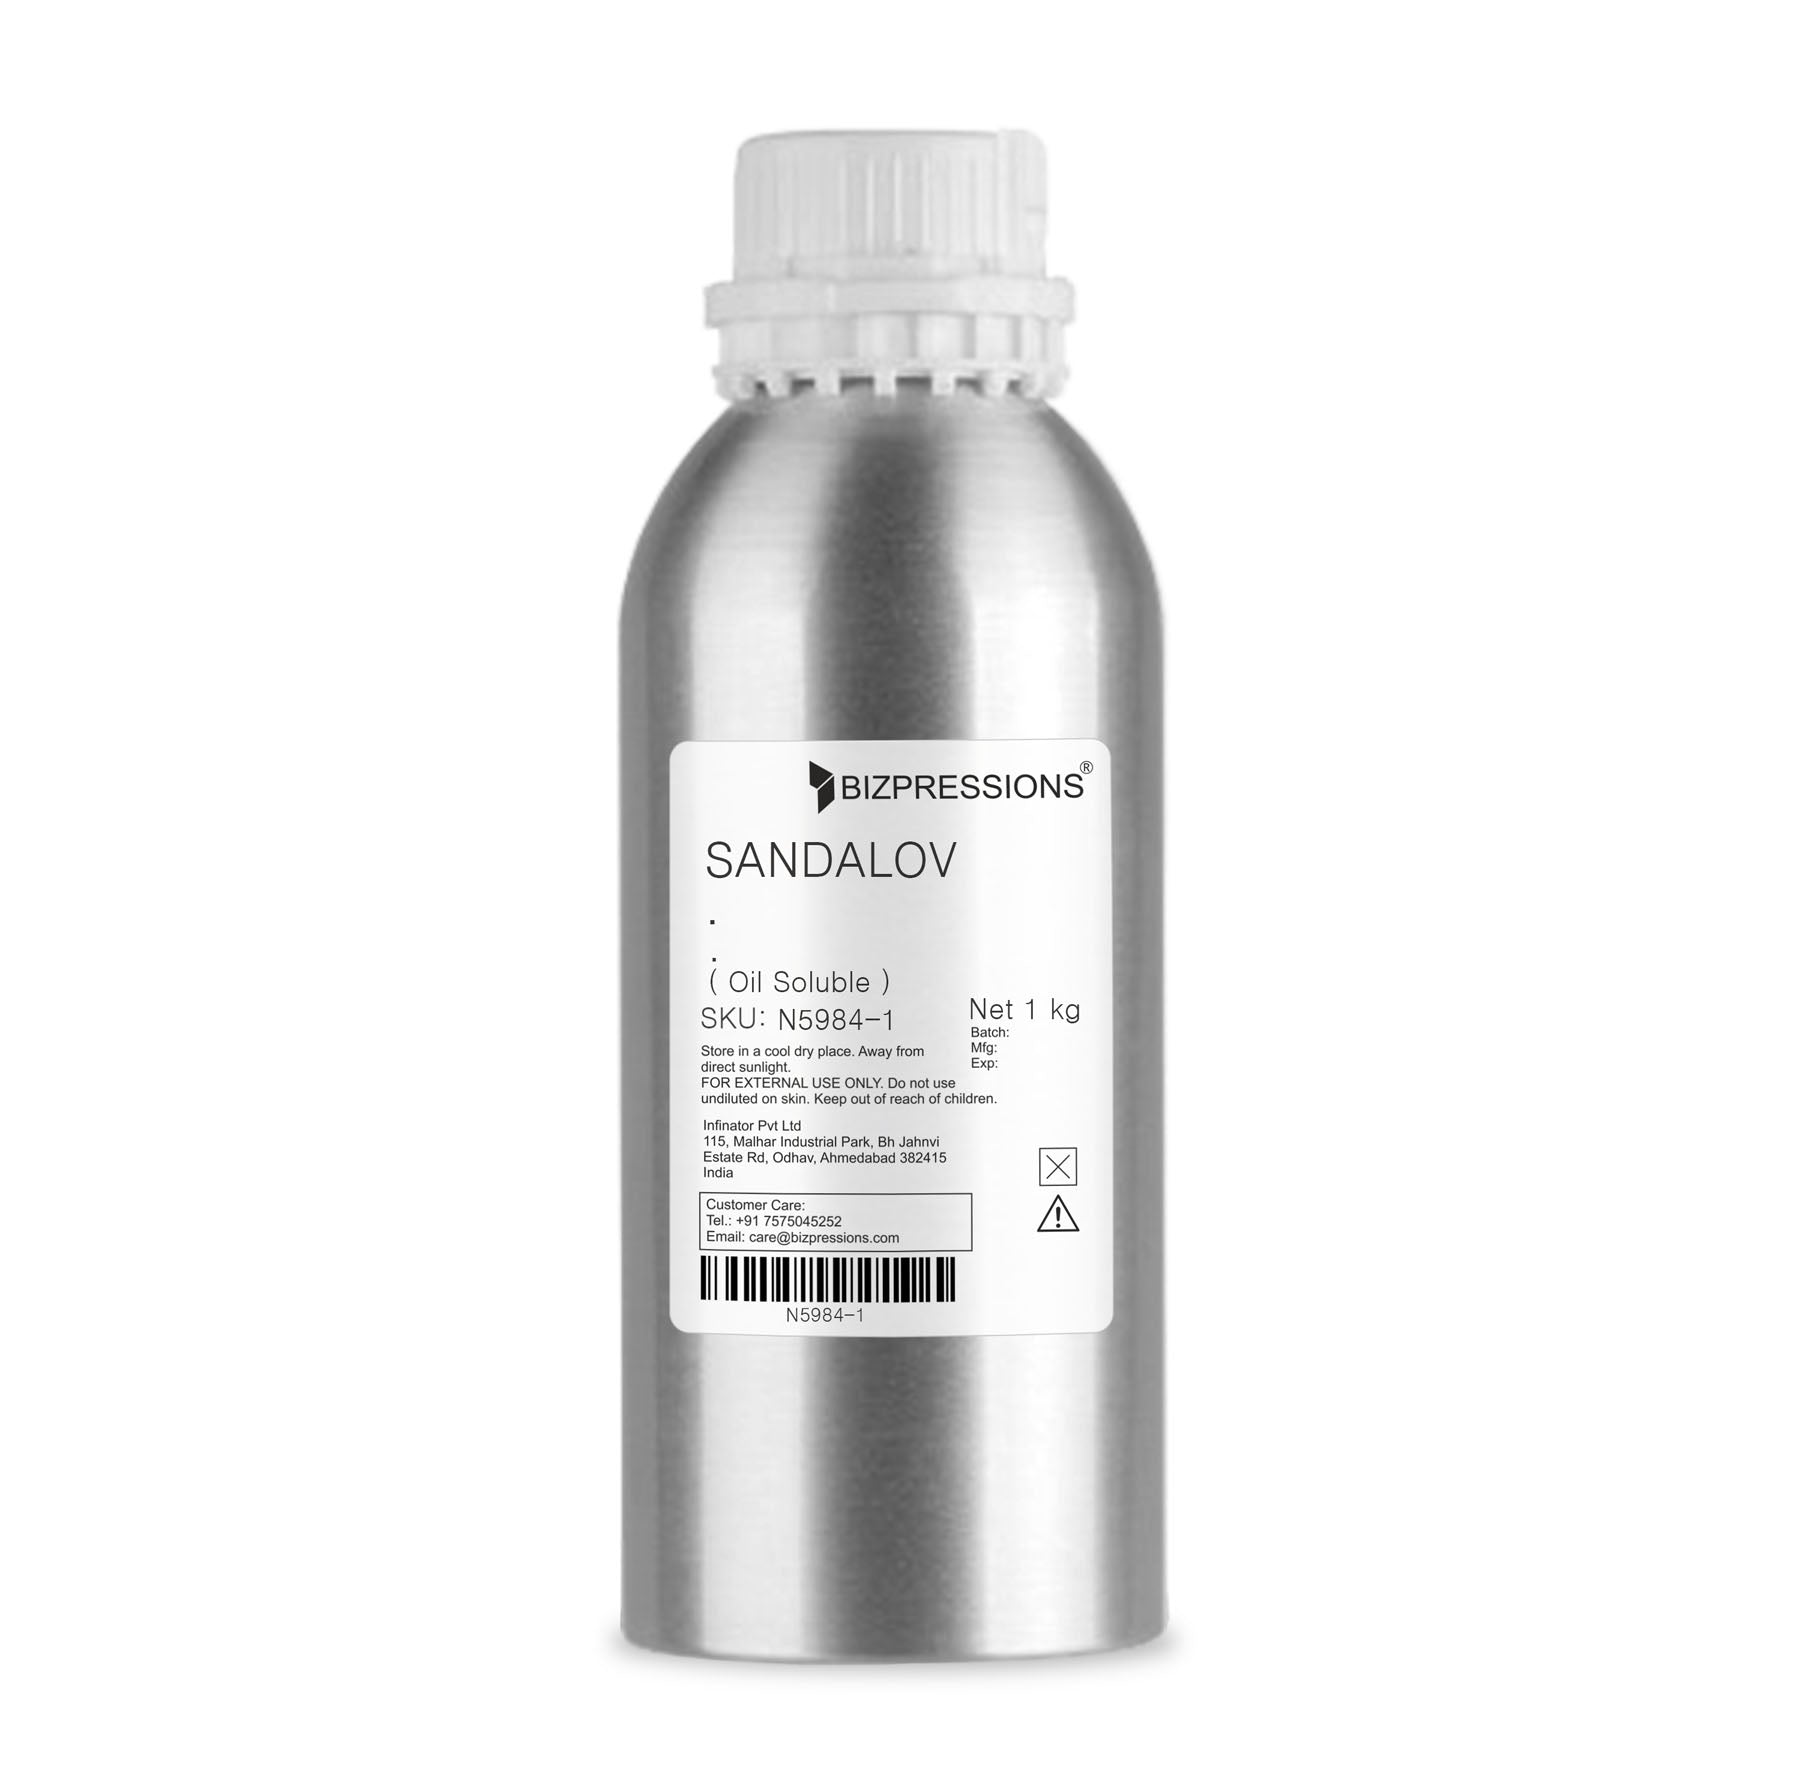 SANDALOV - Fragrance ( Oil Soluble ) - 1 kg